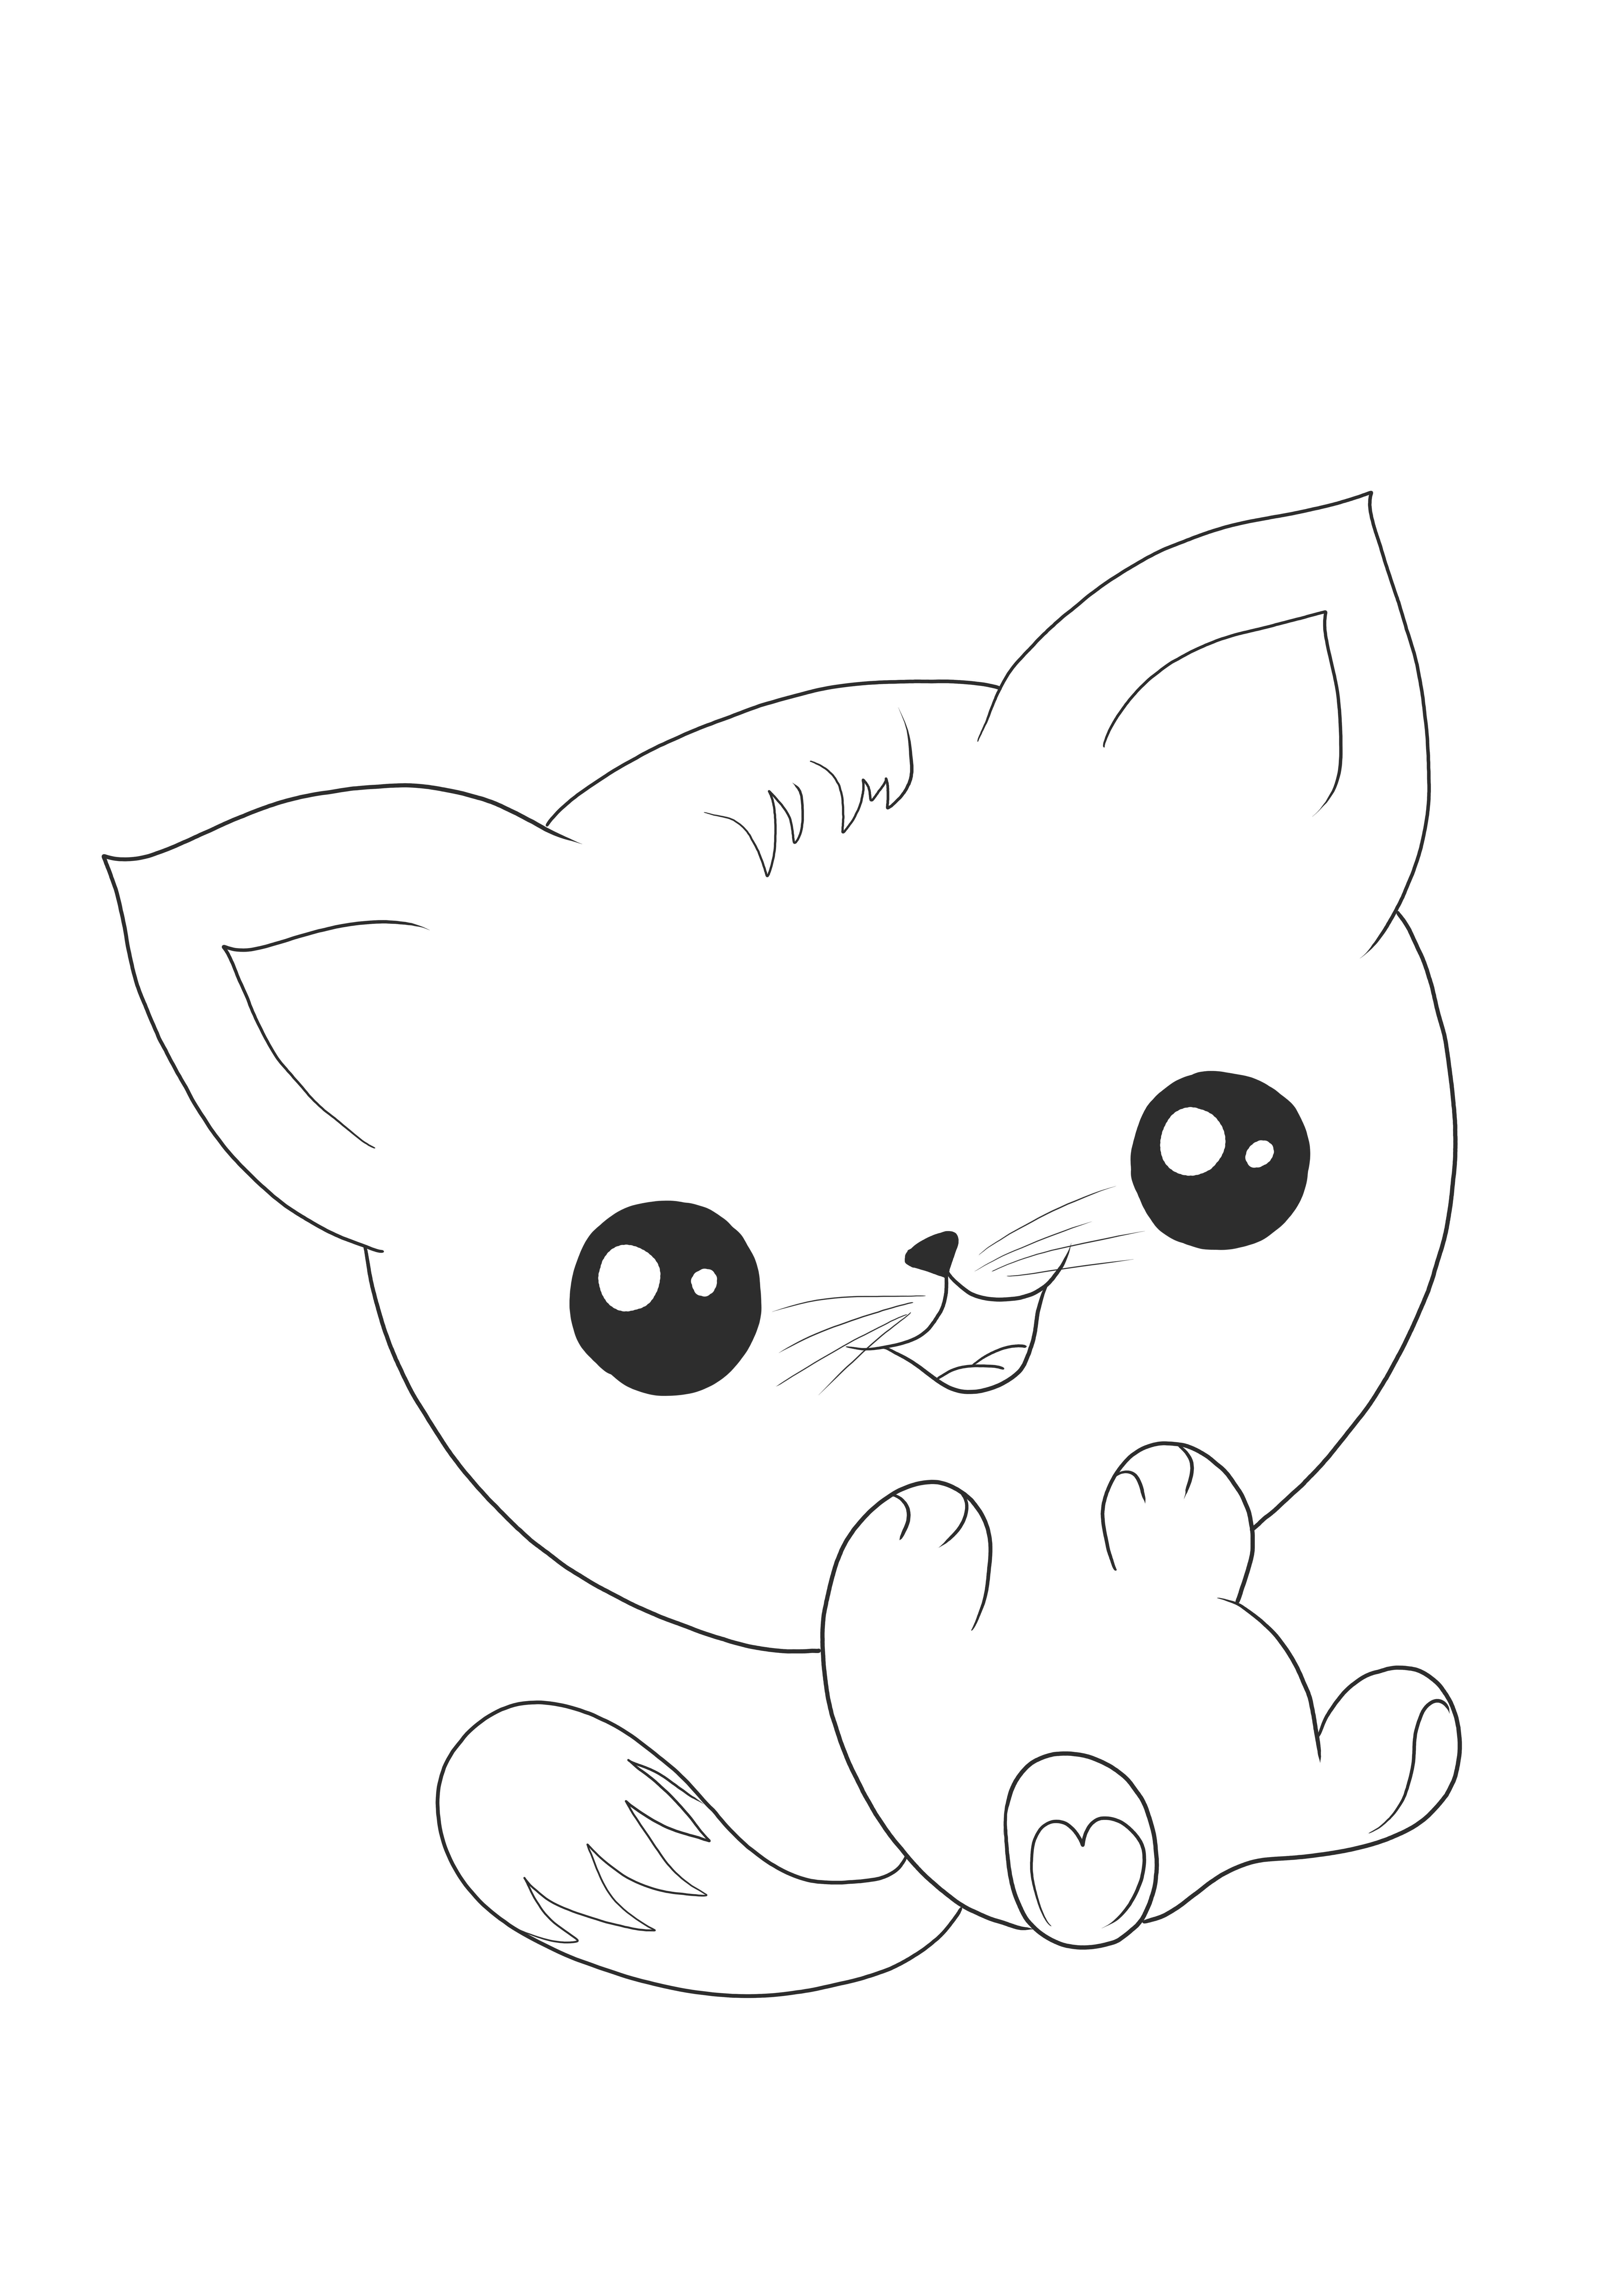 Egy aranyos kawaii macska ingyenesen letölthető színező laphoz